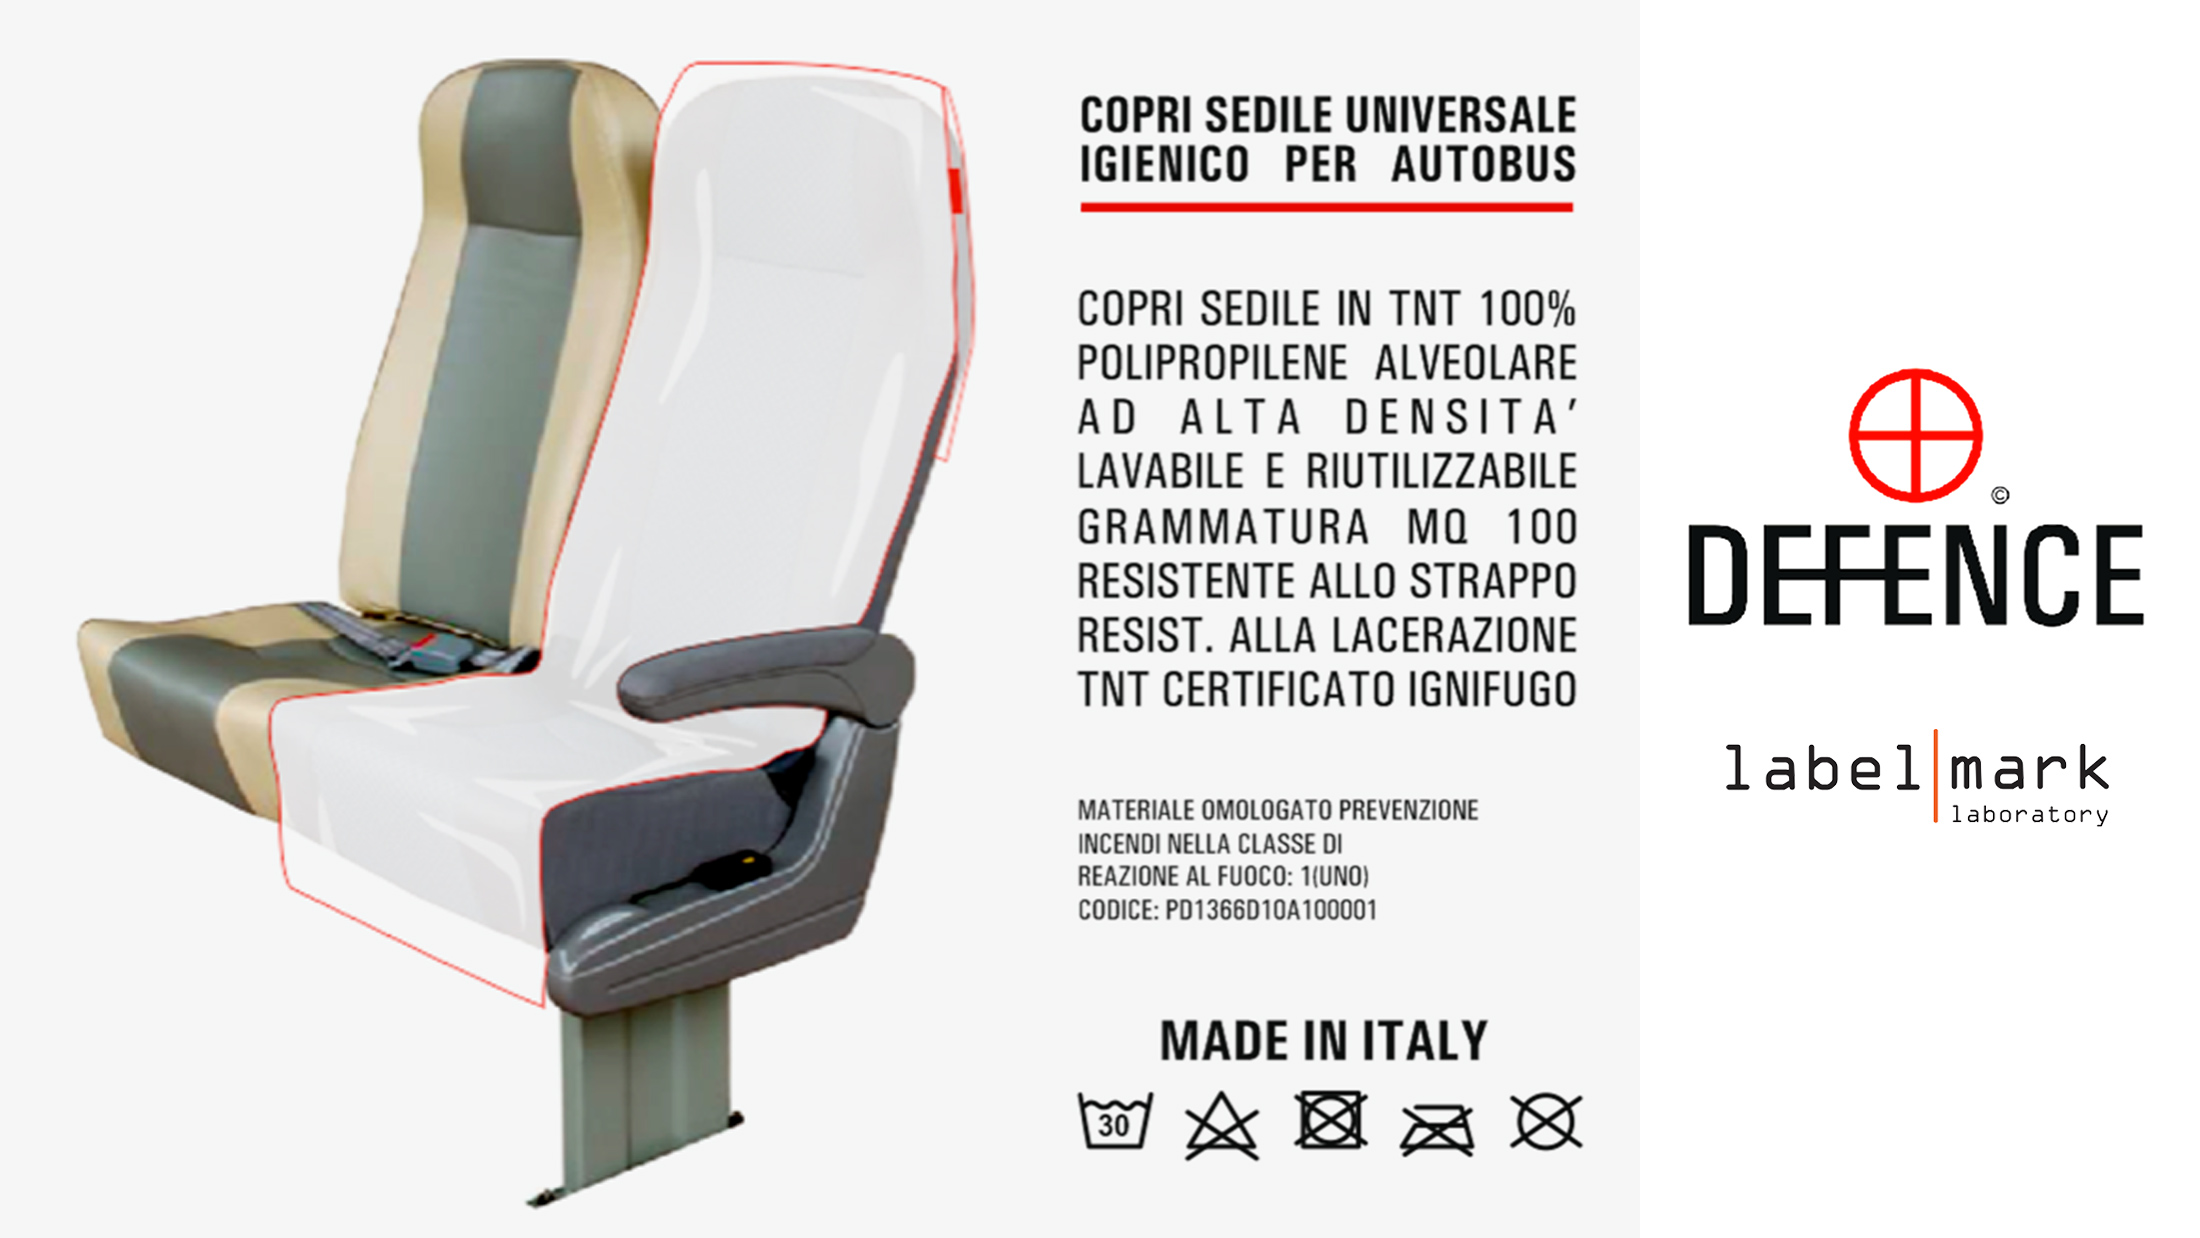 Copri sedile igienico per autobus DEFENCE by Label Mark